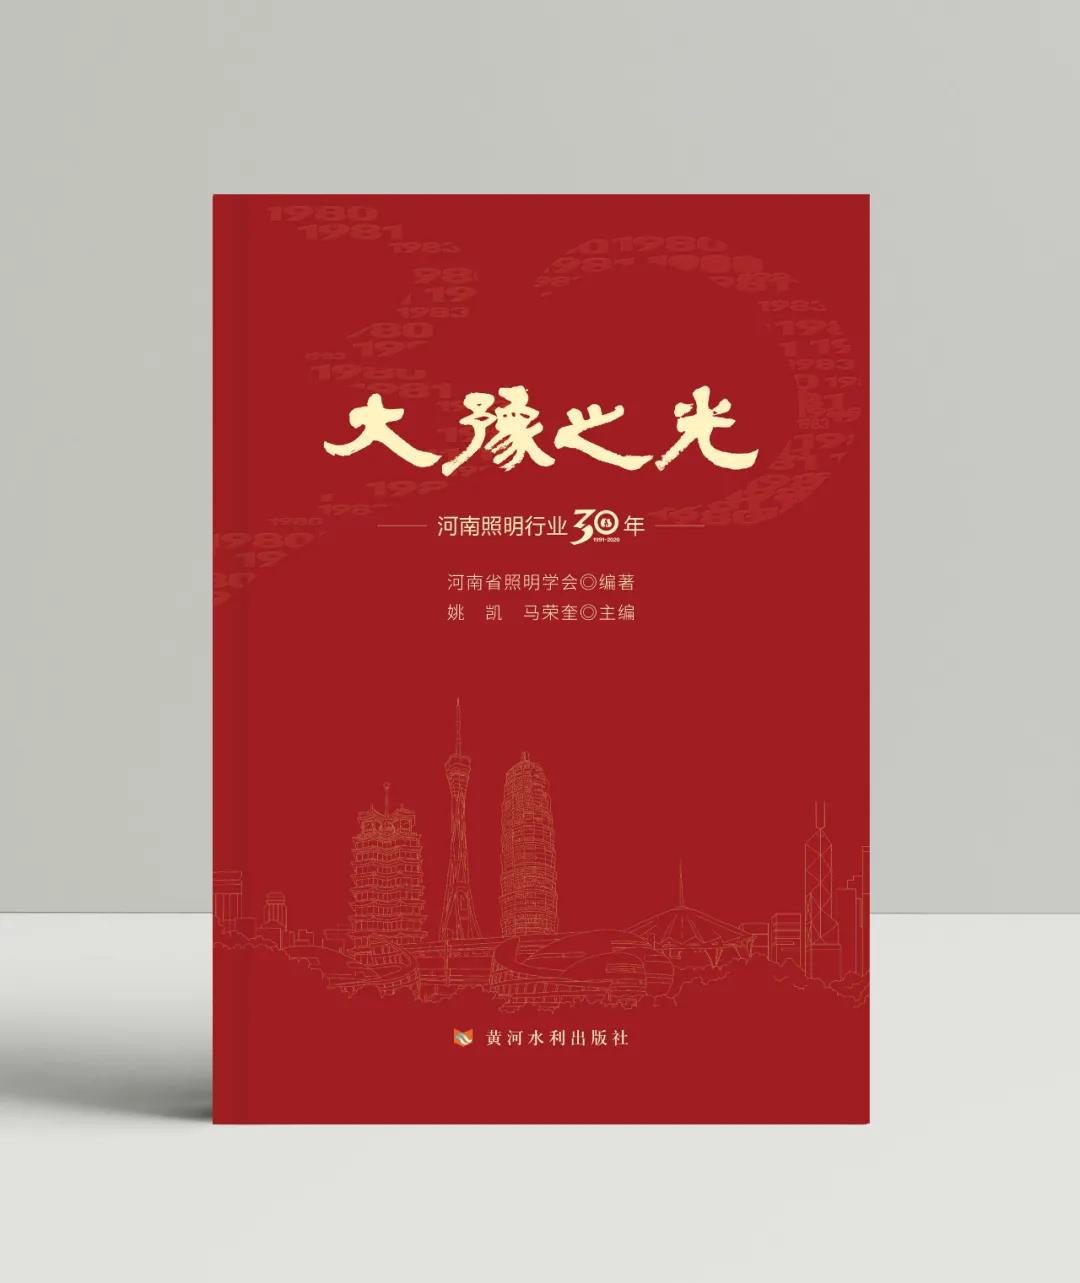 《大豫之光—河南照明行业30年》近日出版